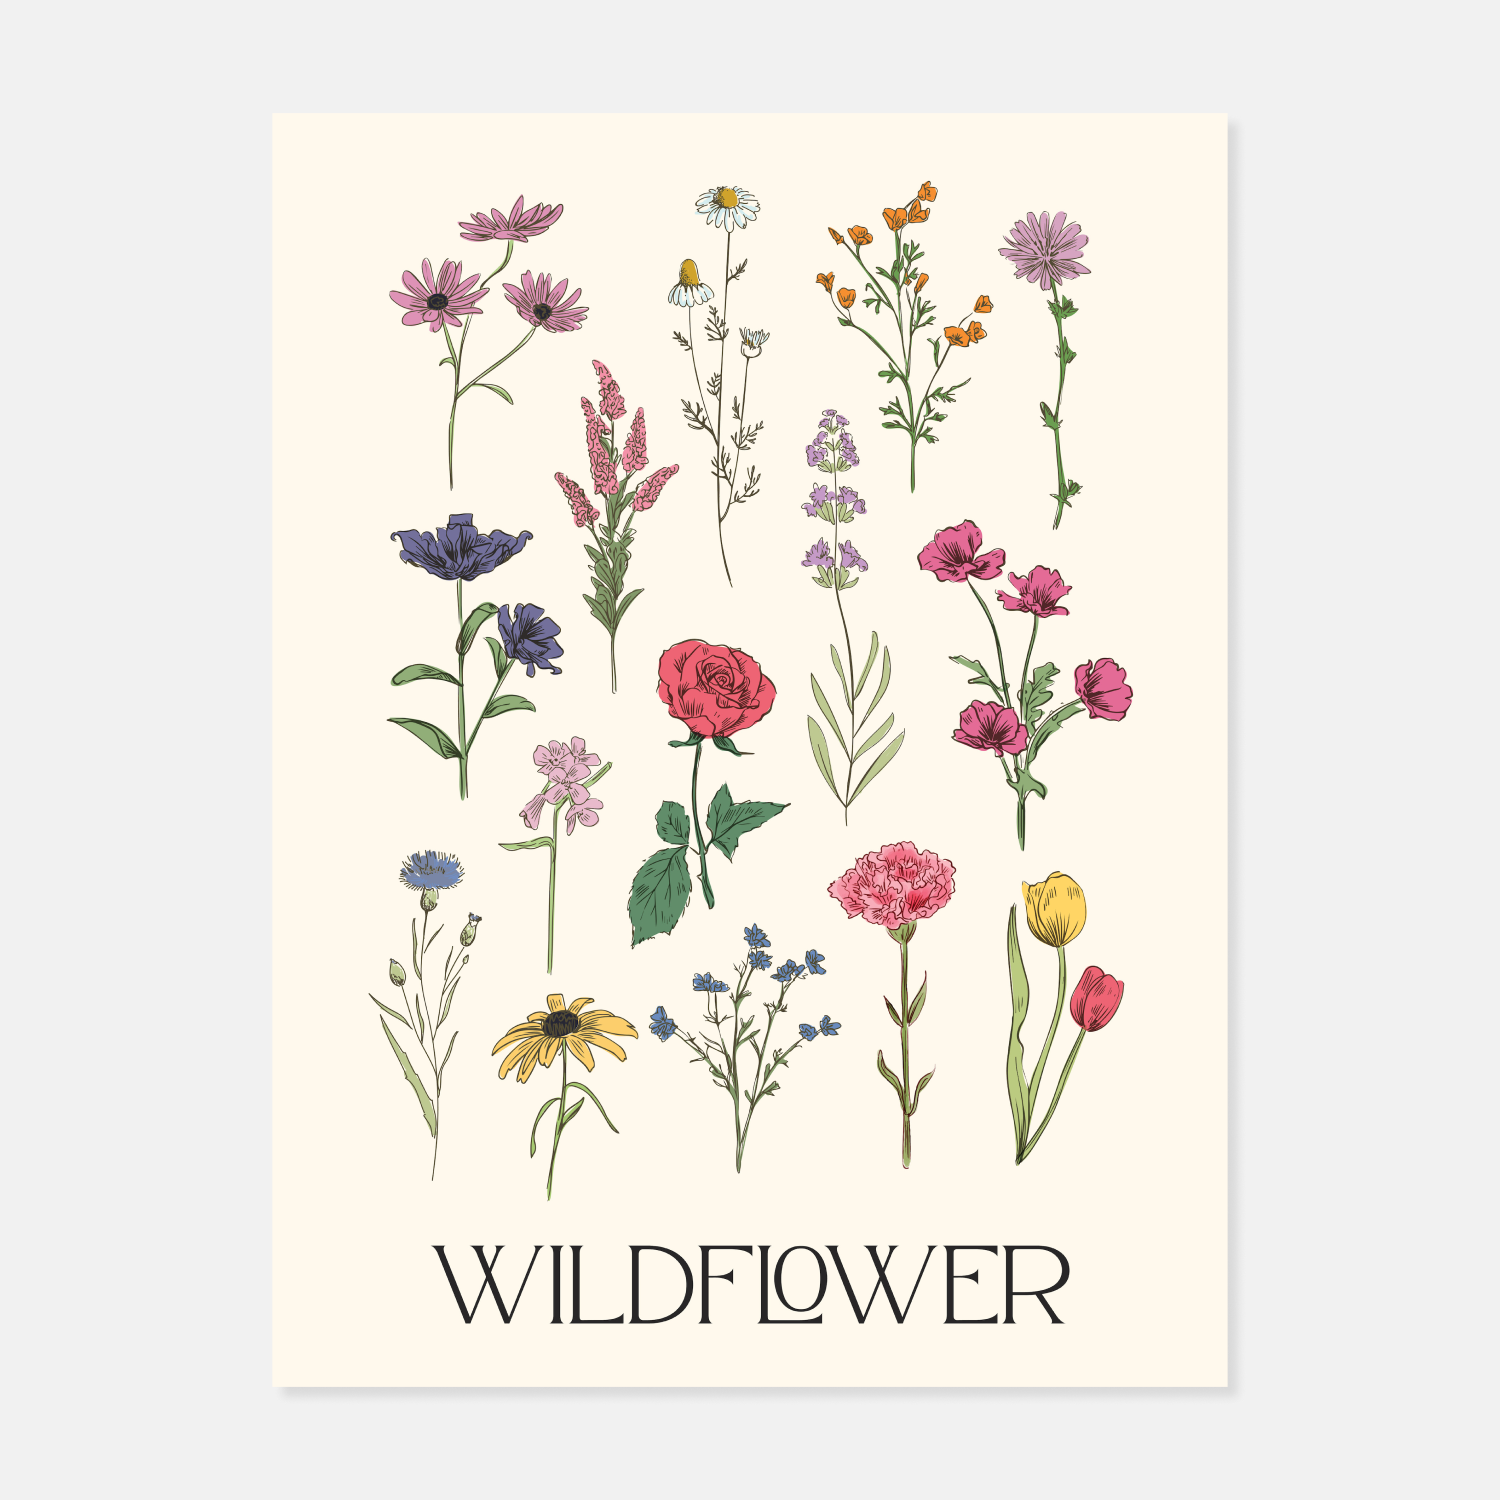 Welcome — Wildflower Art Studio